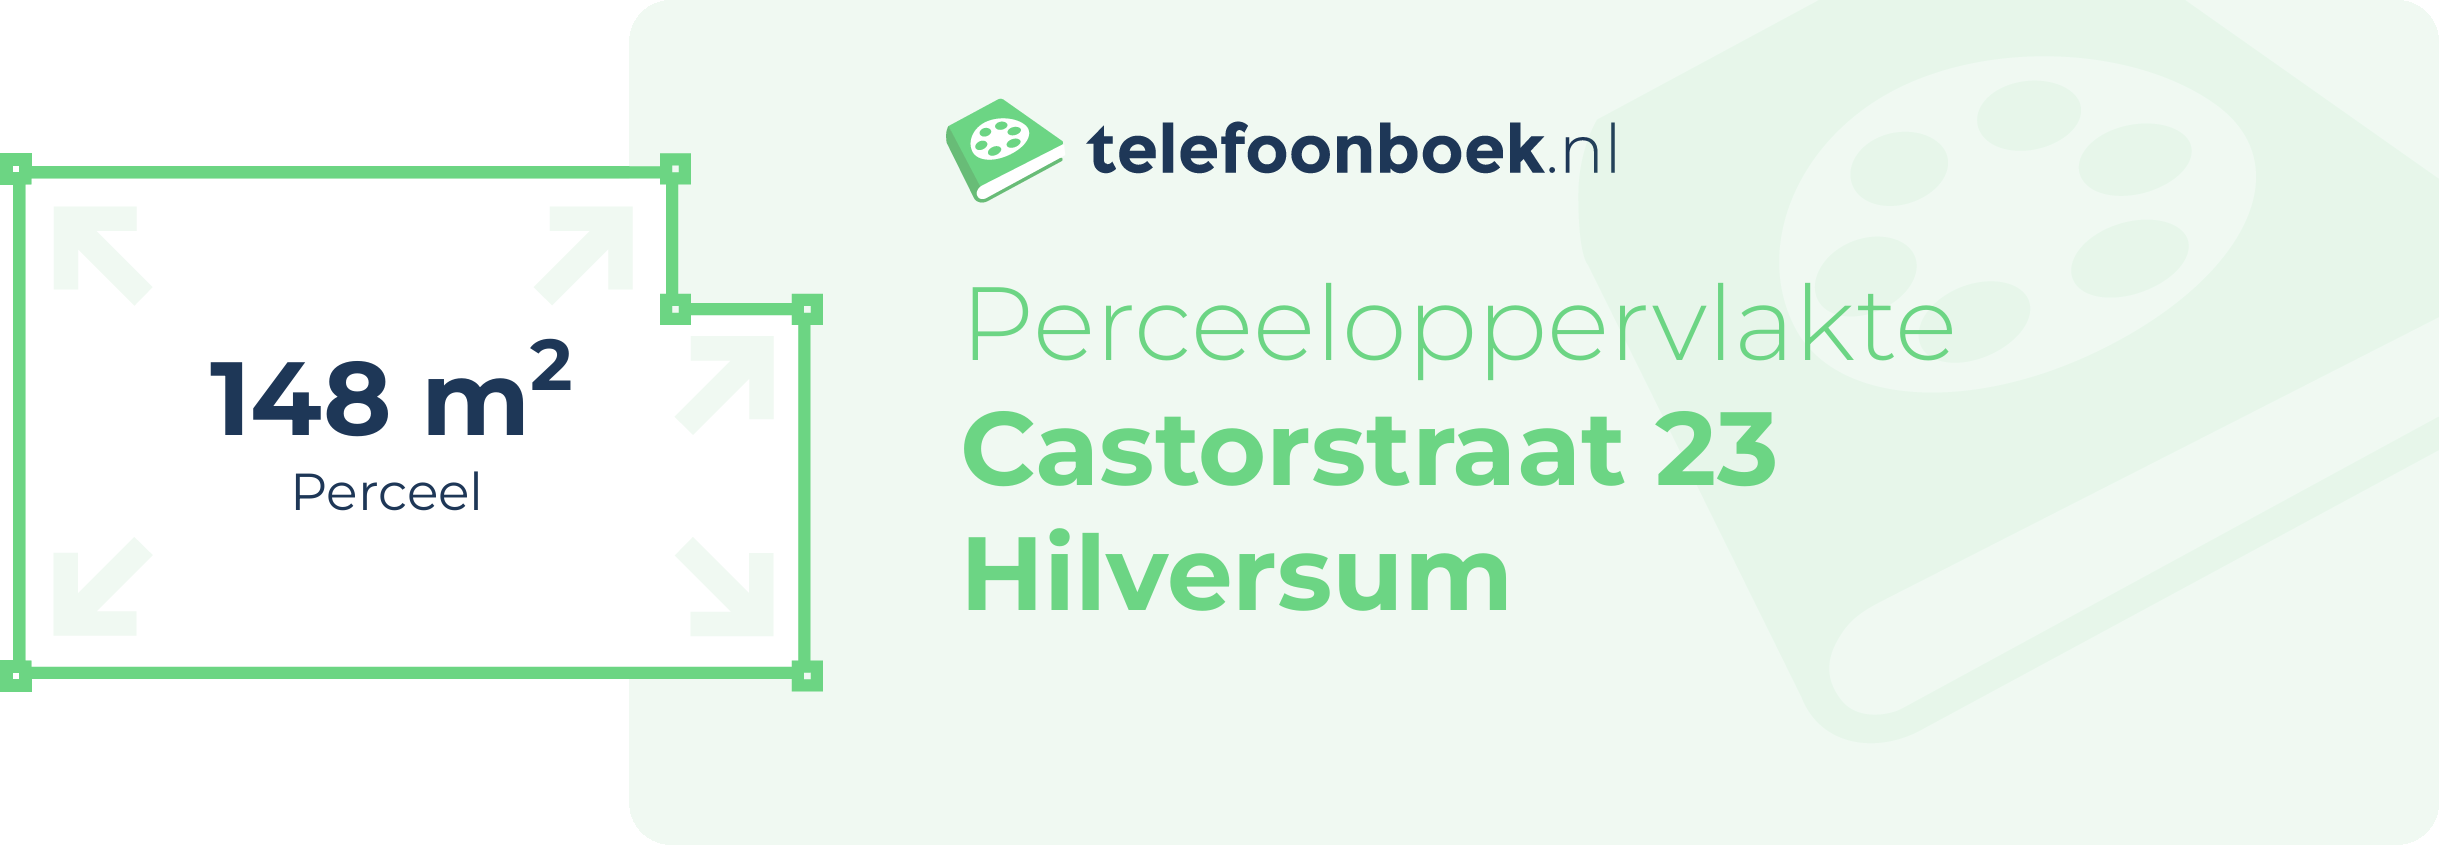 Perceeloppervlakte Castorstraat 23 Hilversum